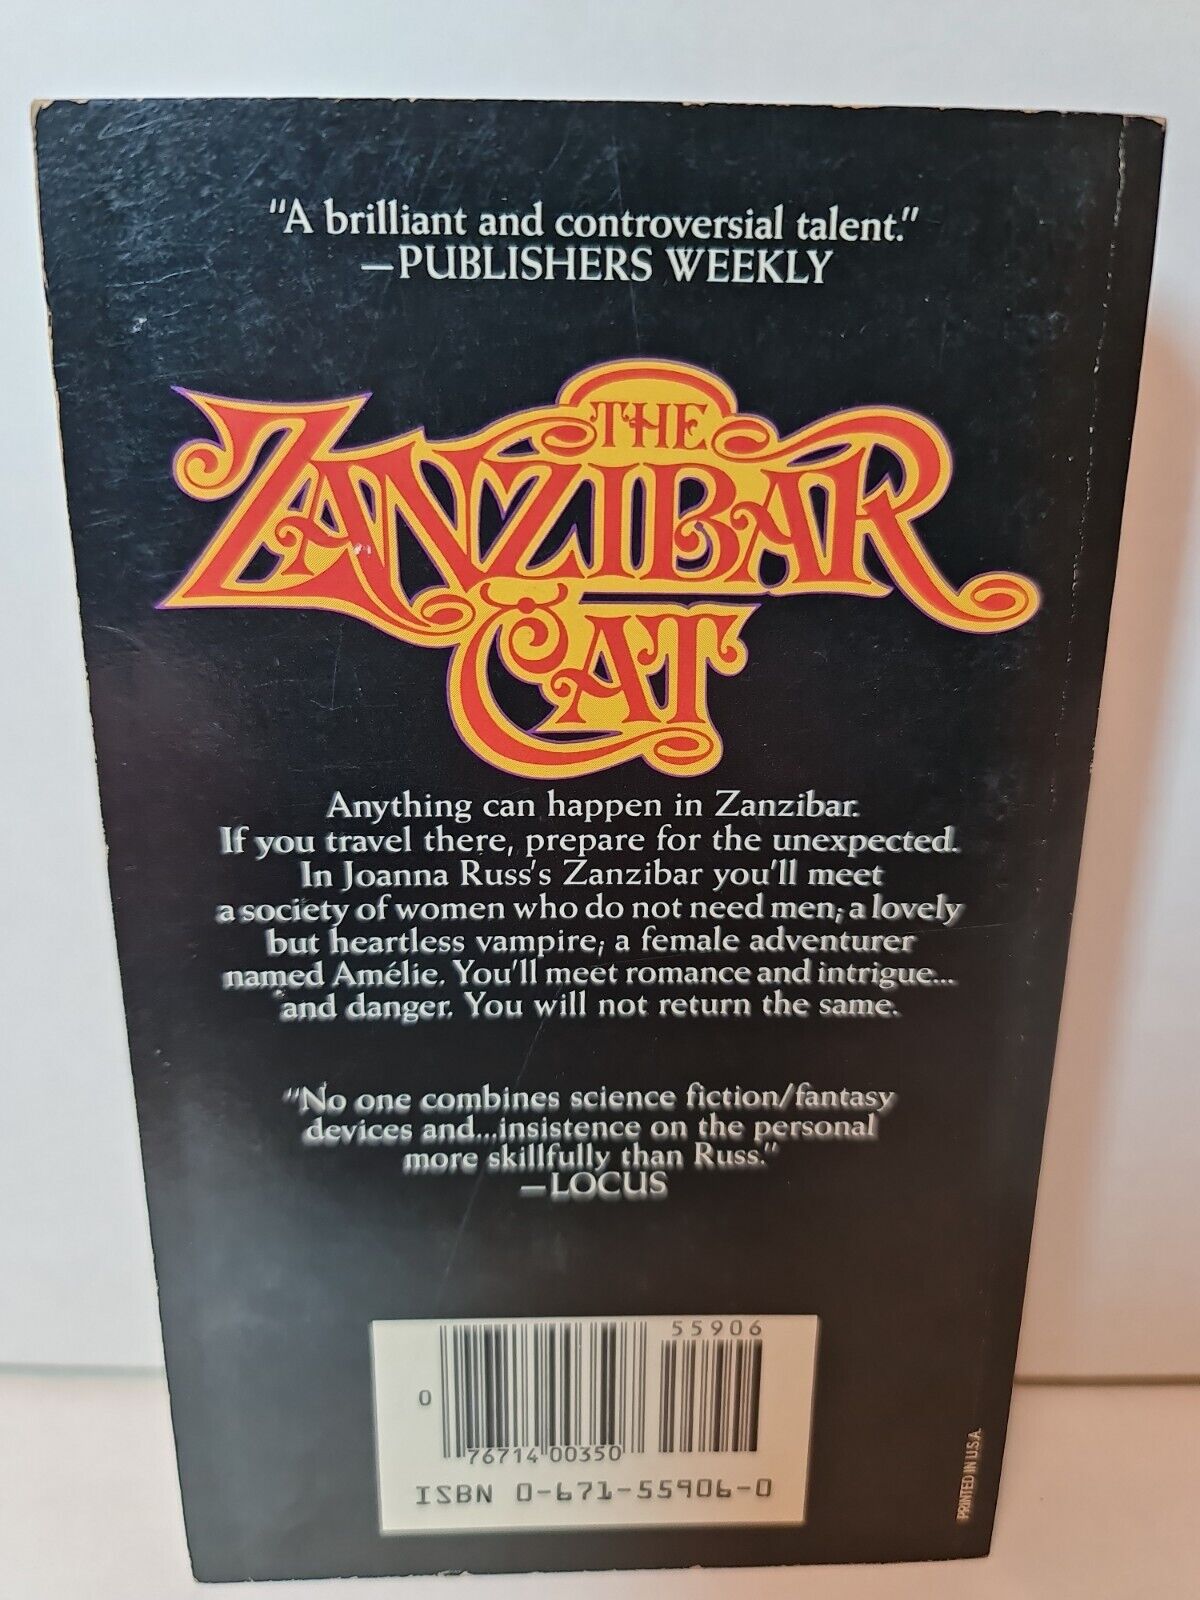 Zanzibar Cat by Joanna Russ (1984)